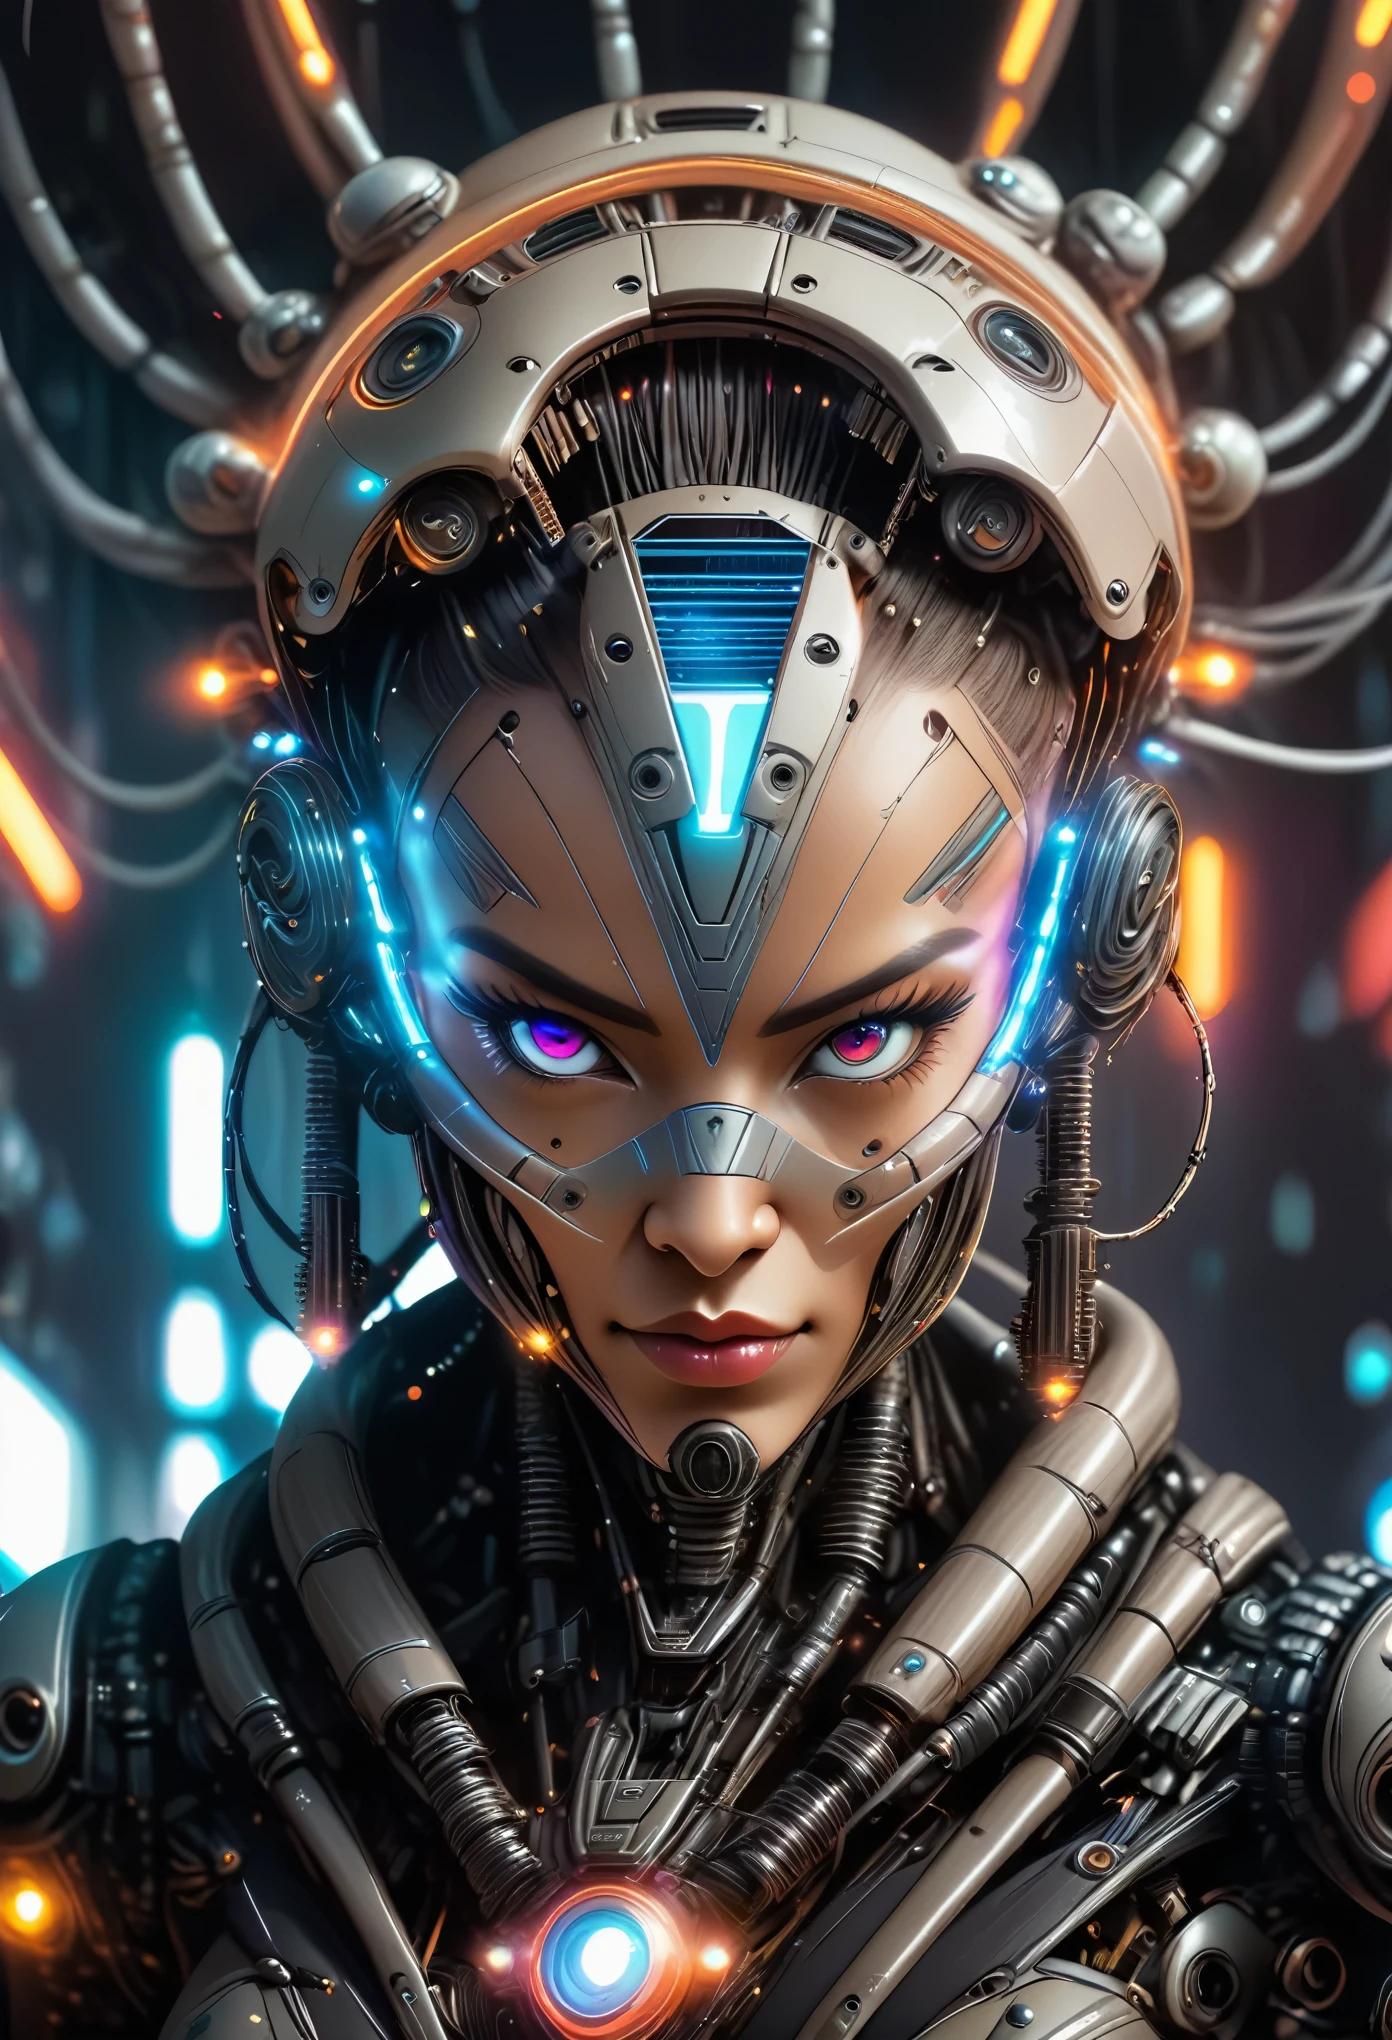 一个戴着未来派头饰和一张未来派脸的女人, 與電腦晶片和電線和諧地結合在一起, 太空船控制背景, 賽博龐克風格, 霓虹燈